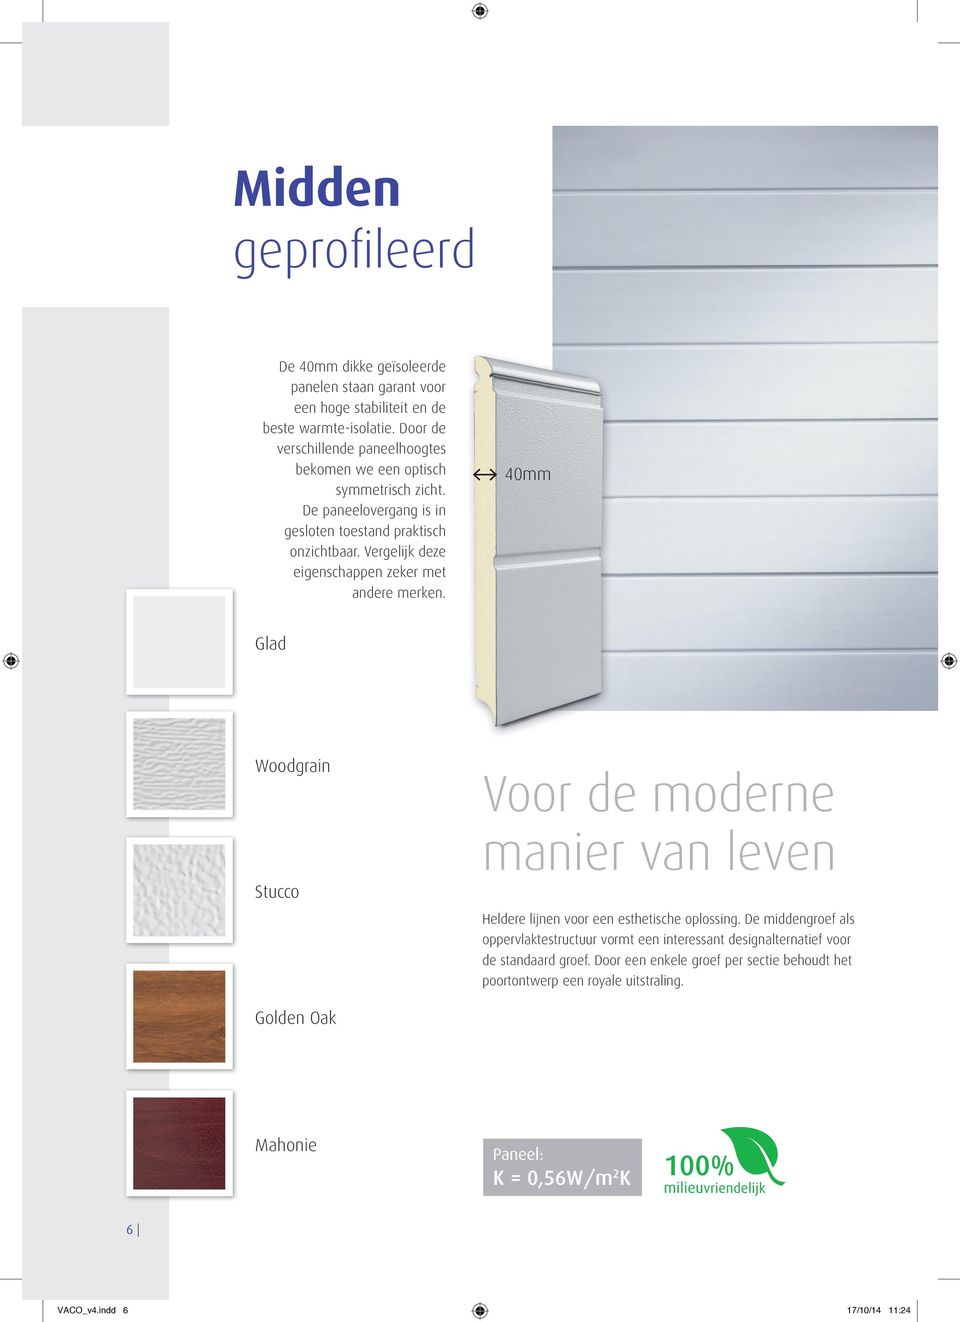 Vergelijk deze eigenschappen zeker met andere merken. 40mm Glad Woodgrain Stucco Voor de moderne manier van leven Heldere lijnen voor een esthetische oplossing.